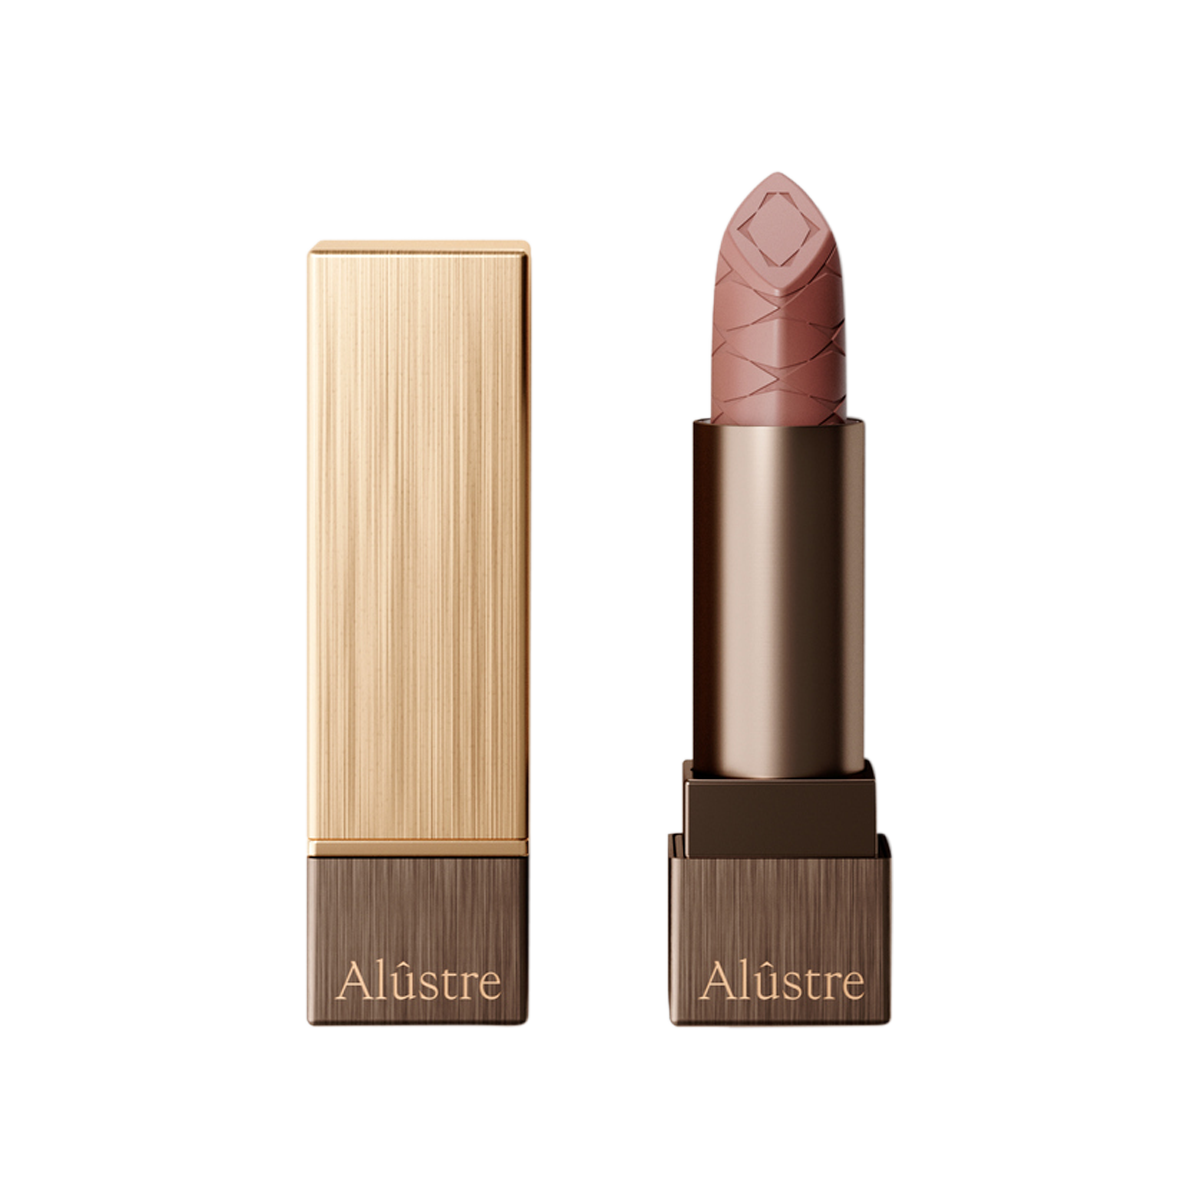 Alûstre - The Original Lipstick